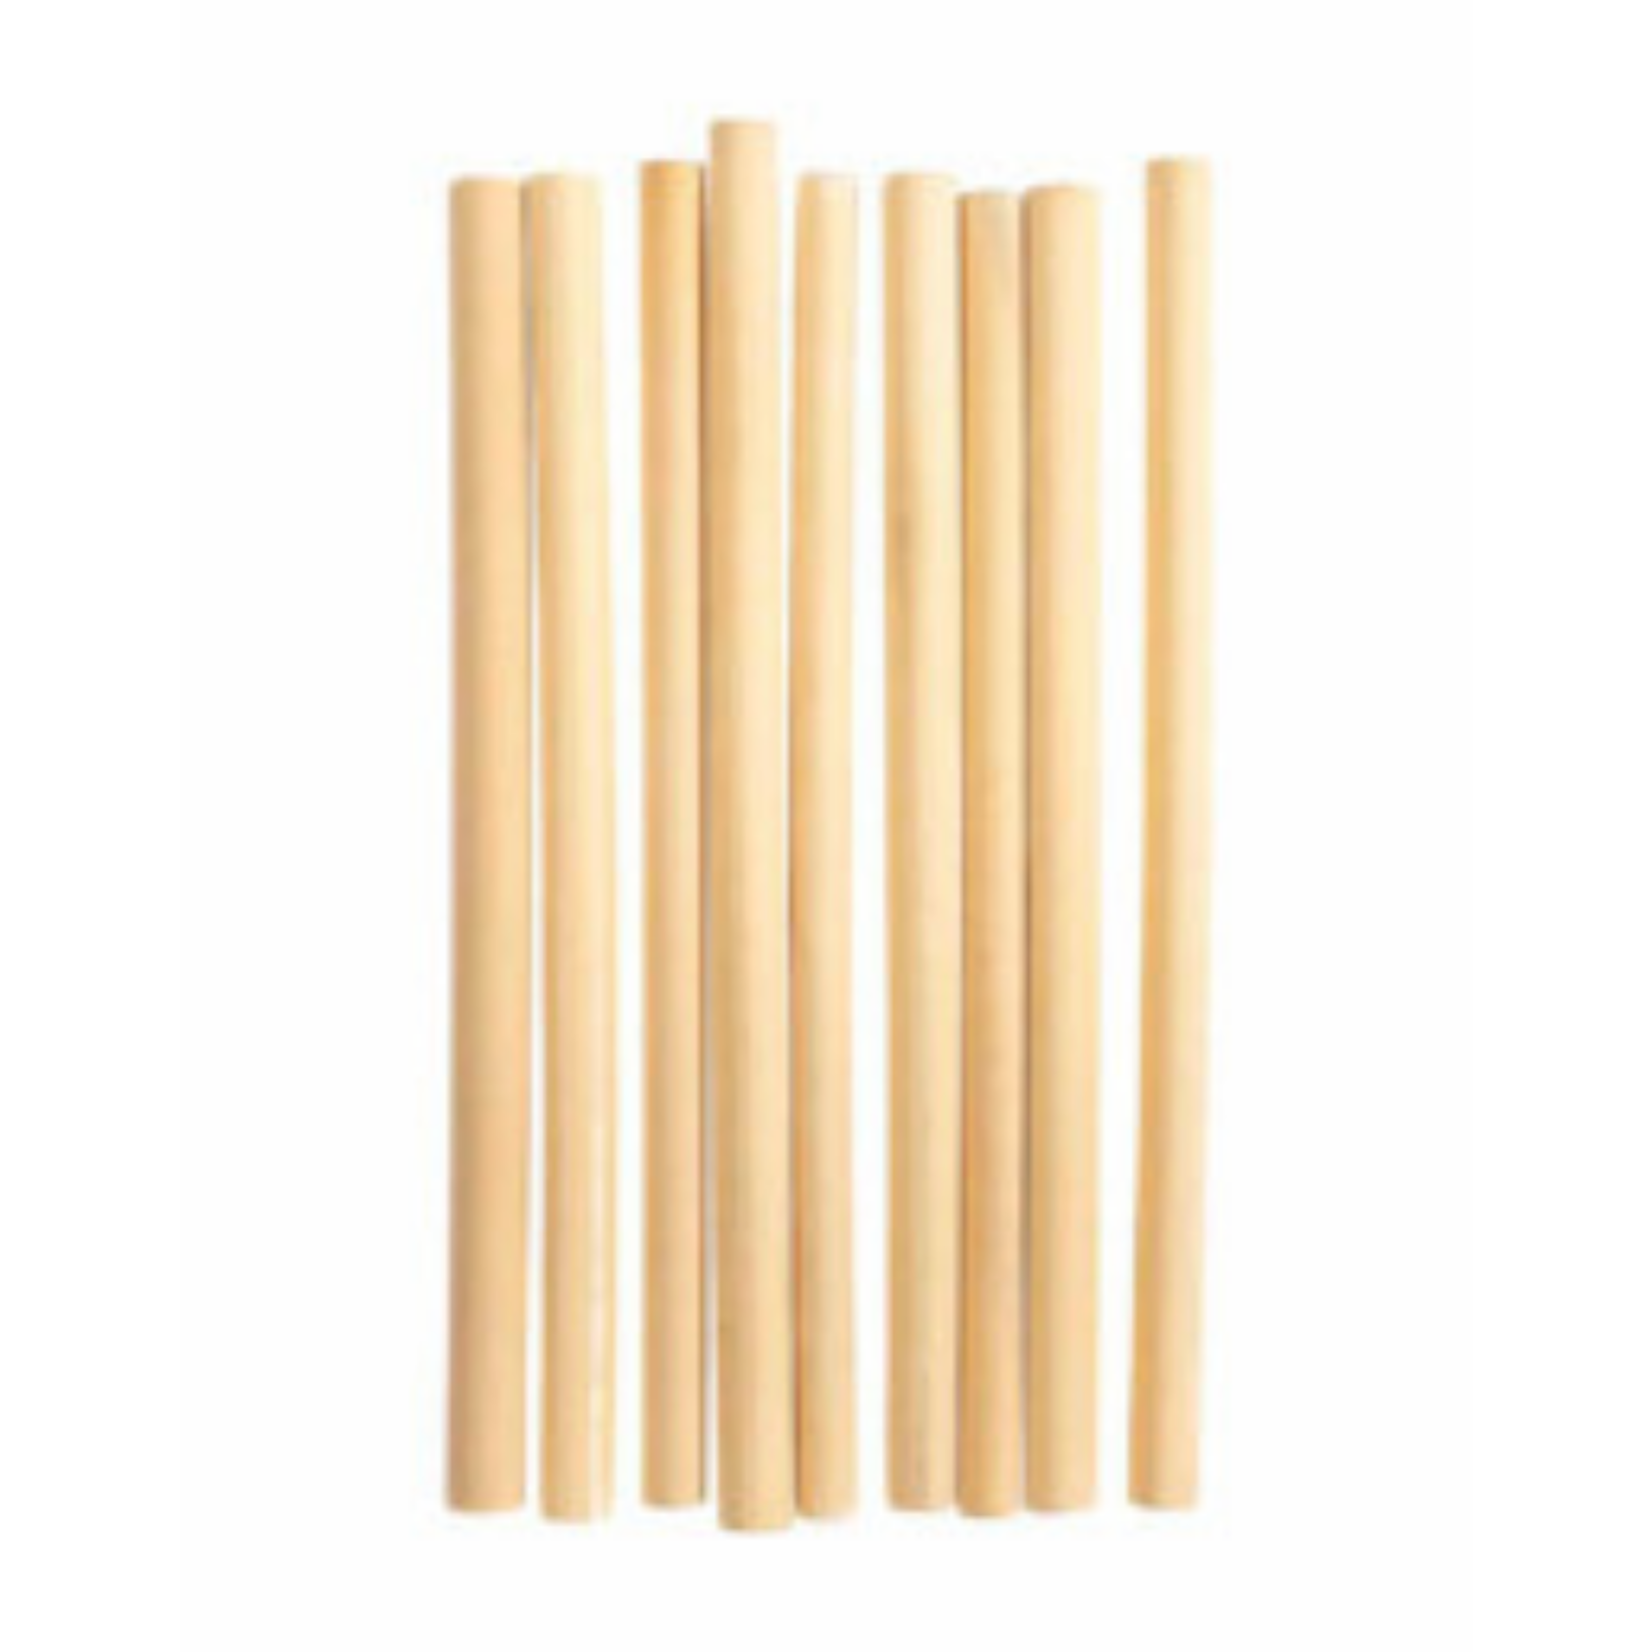 original home original home - bamboo straws - set of 9